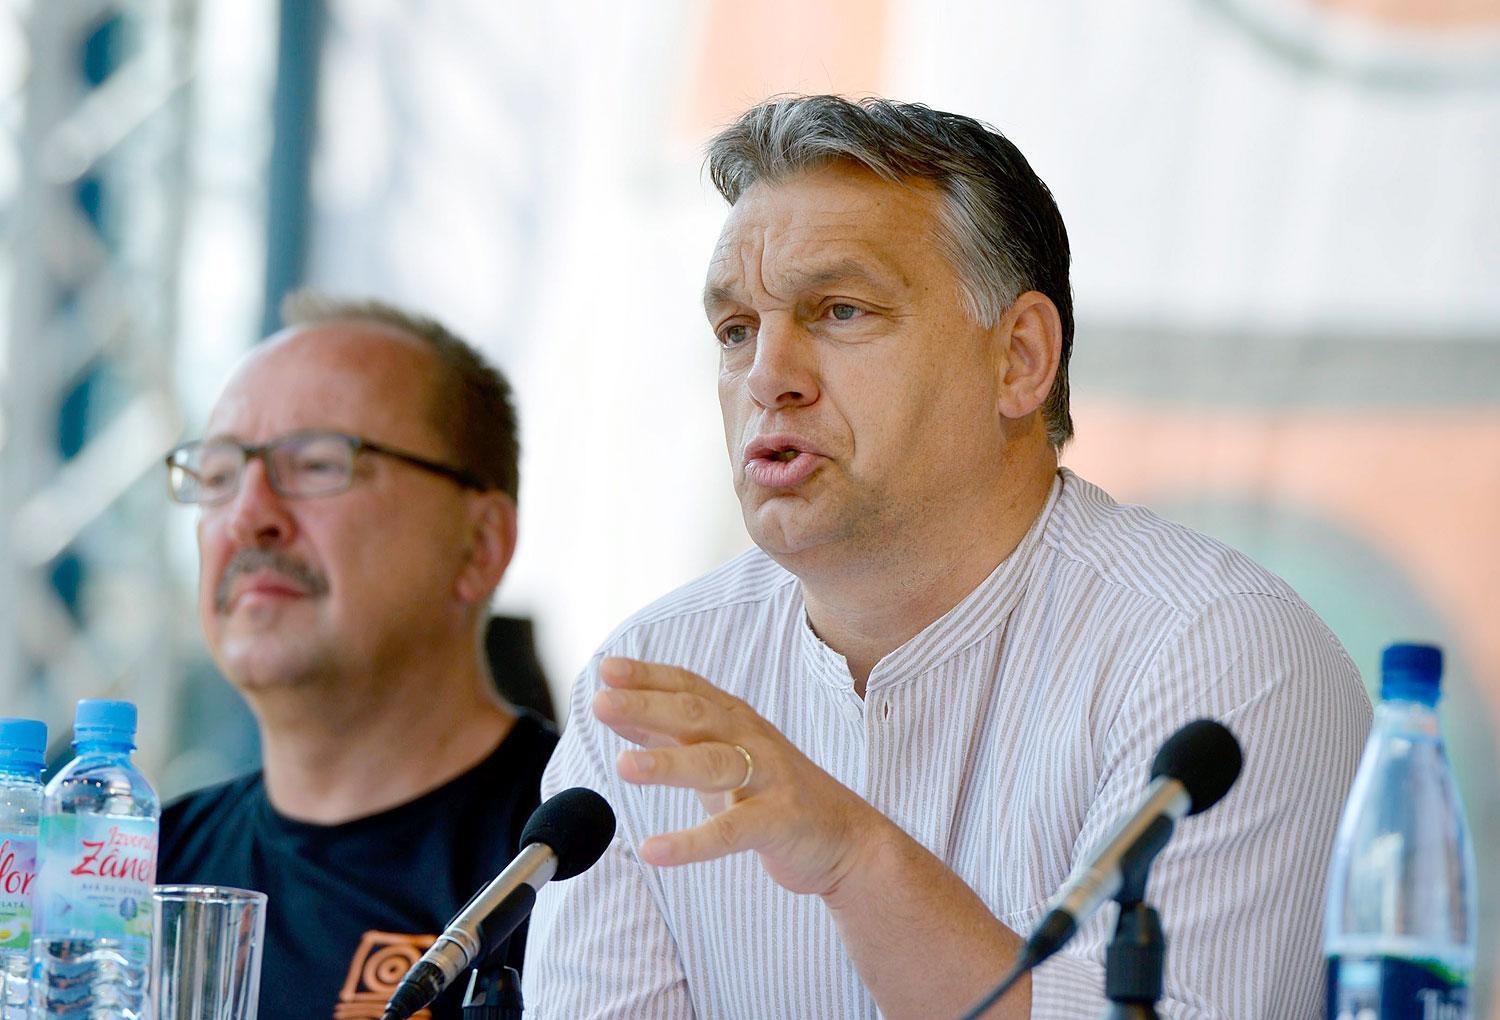 Orbán júliusban, az illiberális államot meghirdető tusnádfürdői beszéde alatt. Nyugtalanító példa